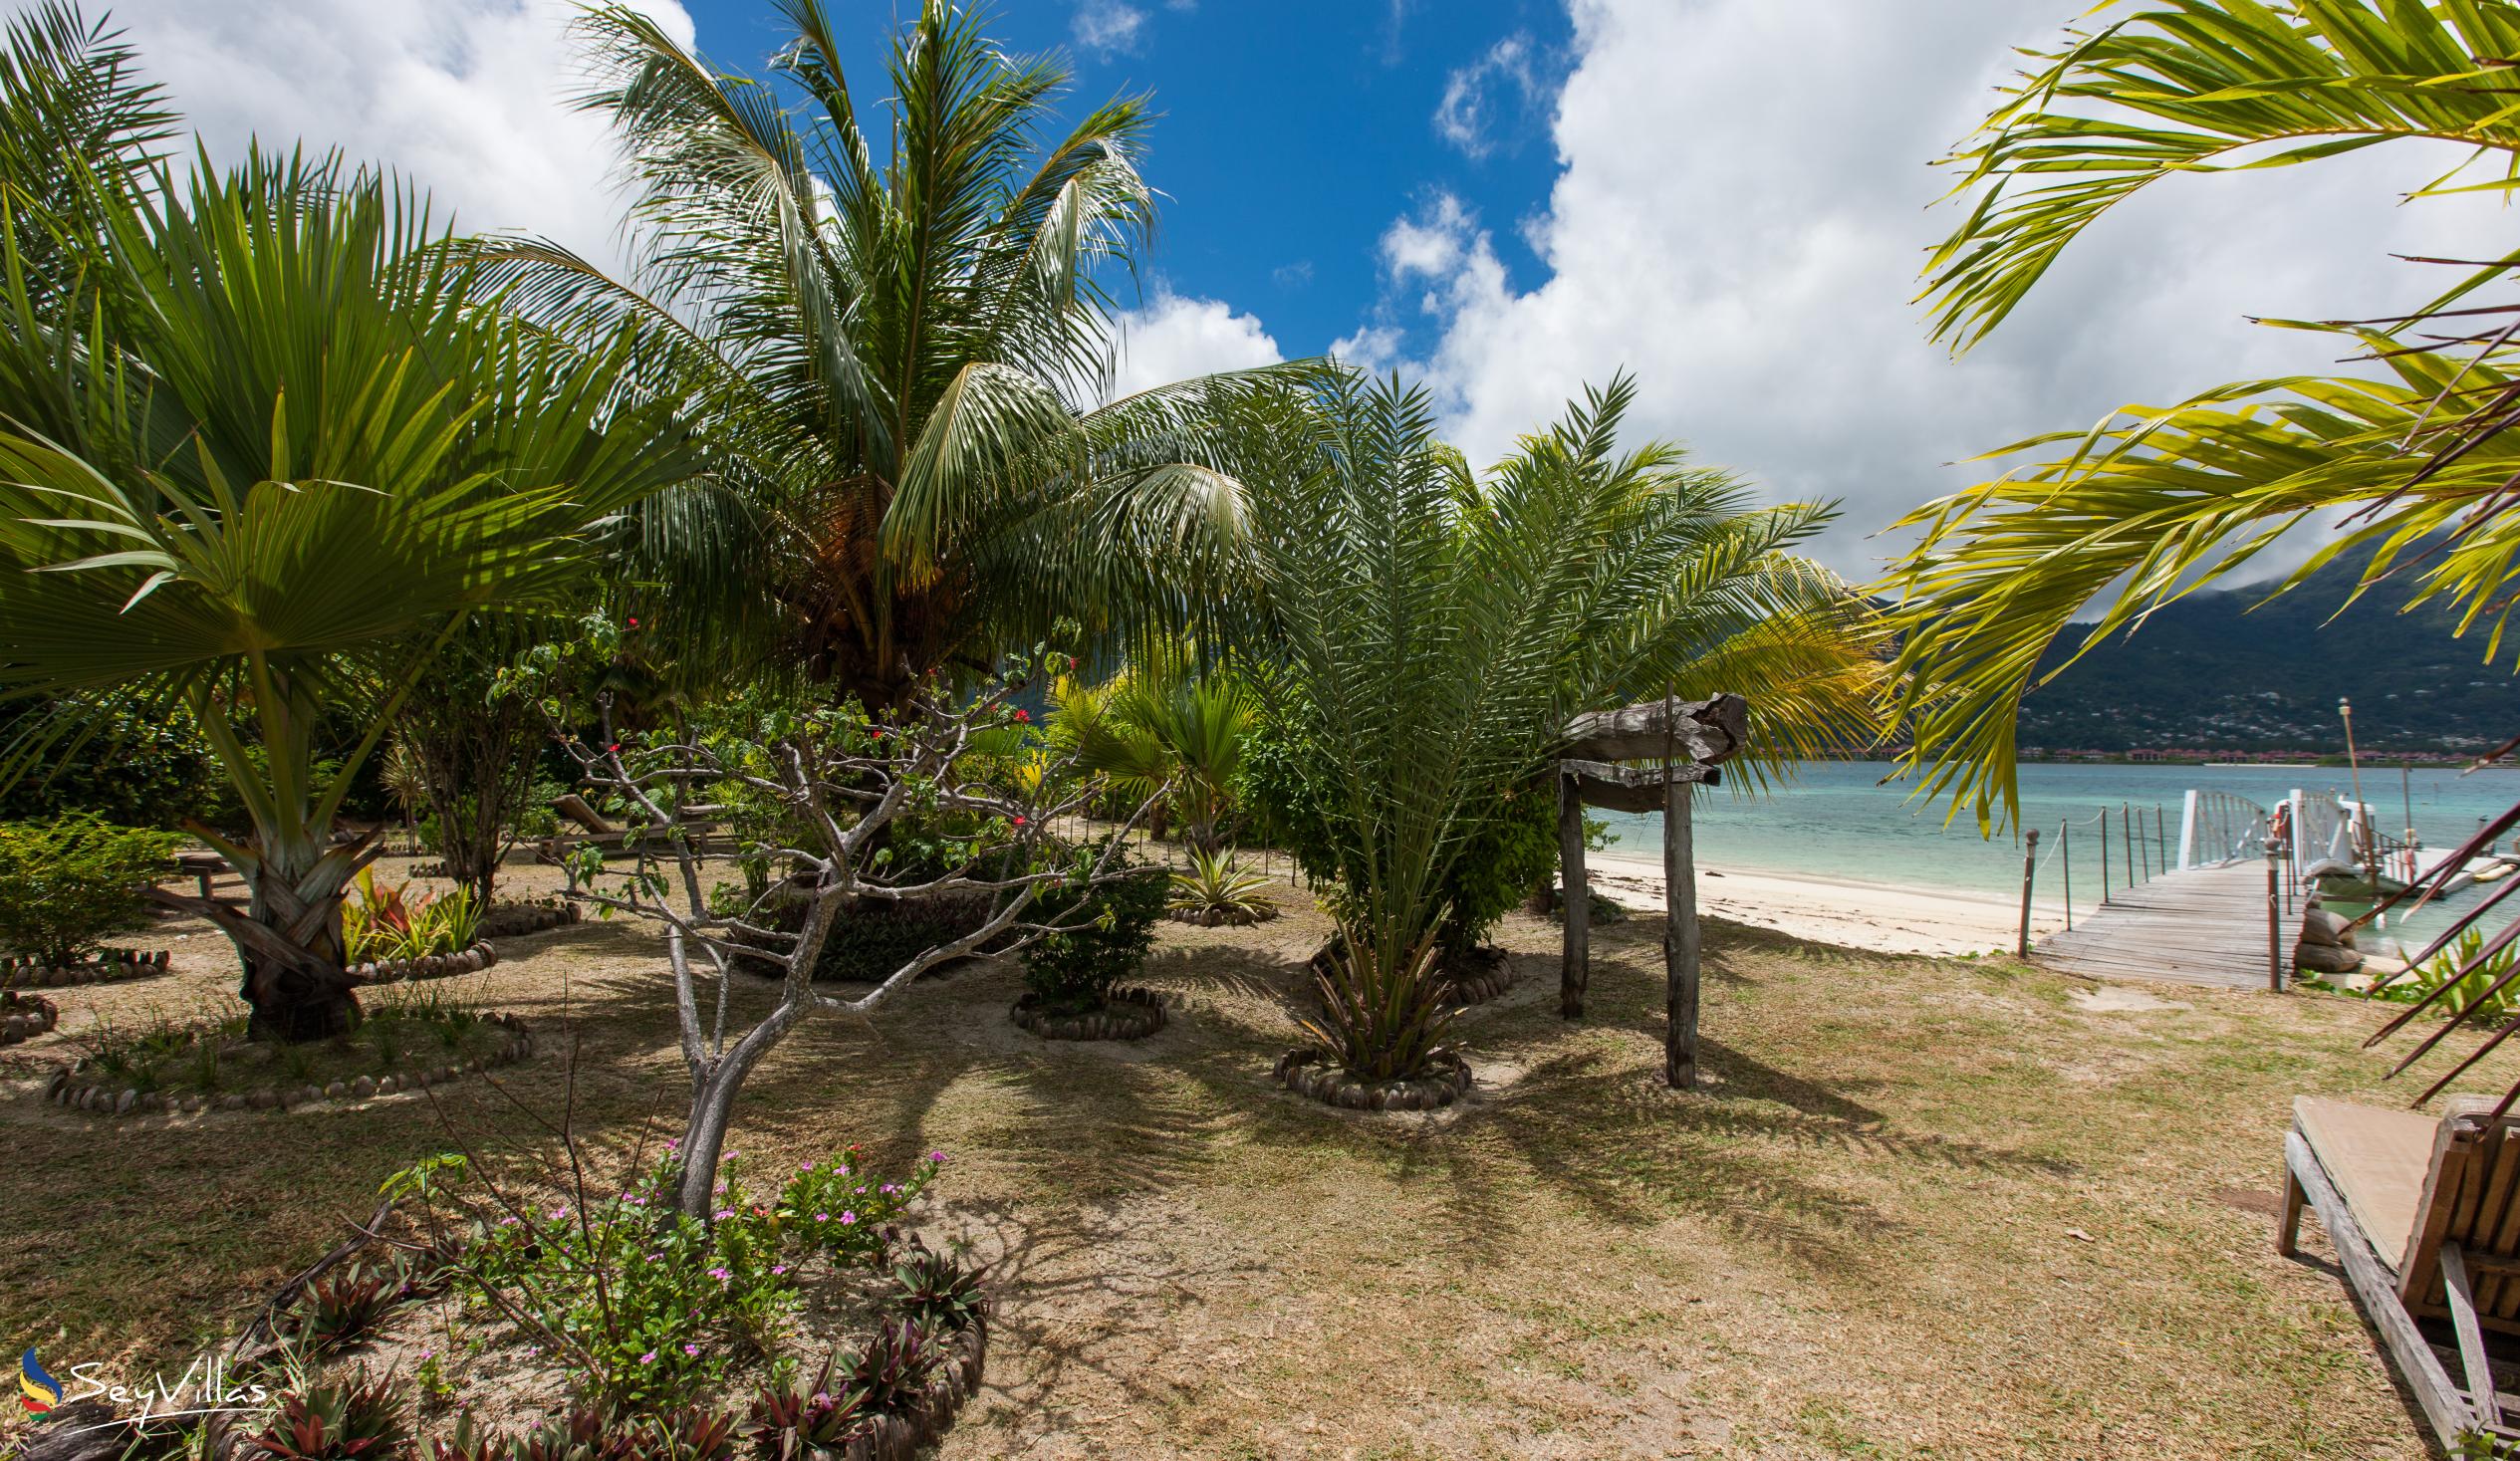 Foto 14: Villa de Cerf - Aussenbereich - Cerf Island (Seychellen)